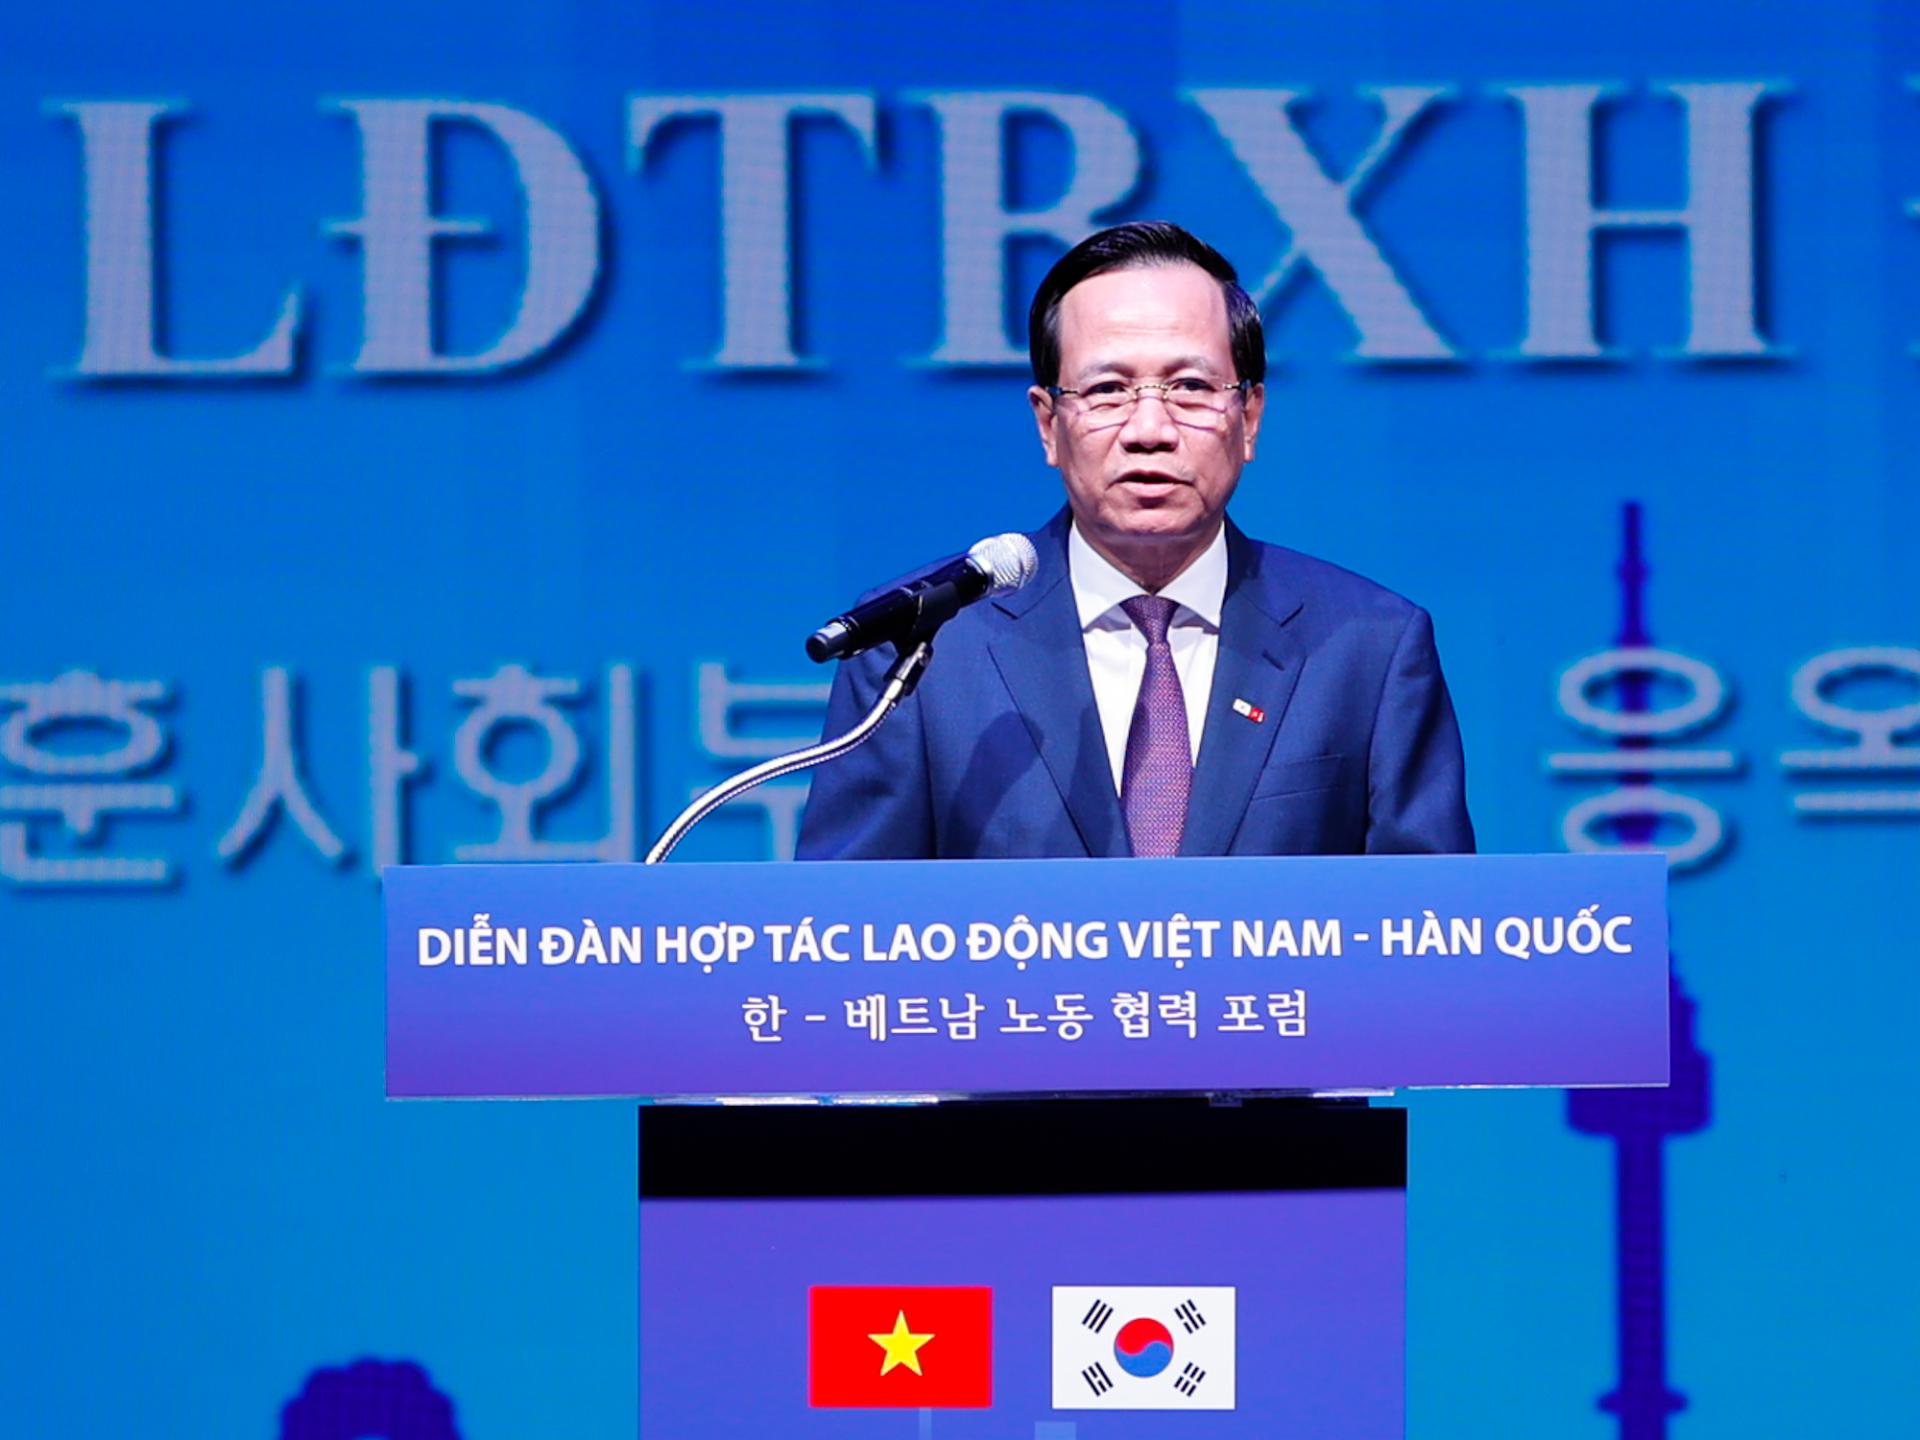 Bộ trưởng Bộ LĐTB&XH Đào Ngọc Dung kỳ vọng quan hệ giữa lao động Việt Nam và Hàn Quốc sẽ tiếp tục mở rộng theo hướng đi vào đào tạo những ngành nghề chuyên môn chất lượng cao, có năng suất, có thu nhập cao hơn...